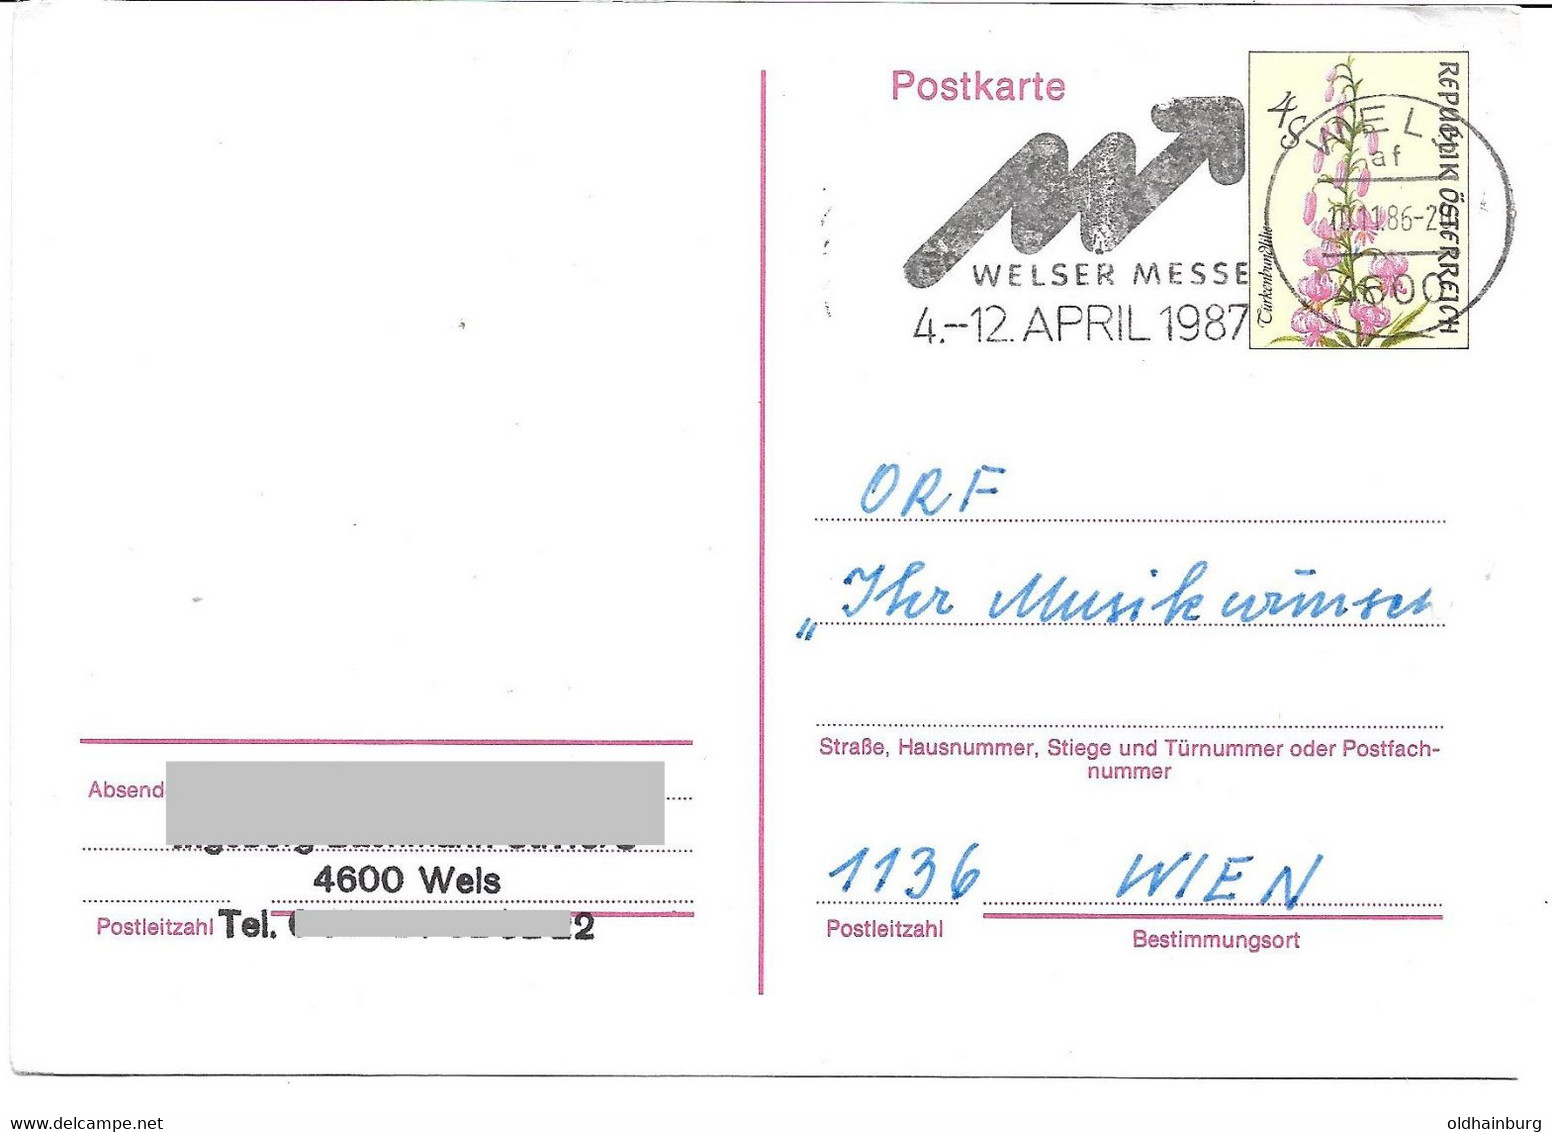 2225l: Österreich- Postkarte 1986 Mit "Musikwunsch" An Den ORF Via 4600 Wels (Werbestempel) - Wels